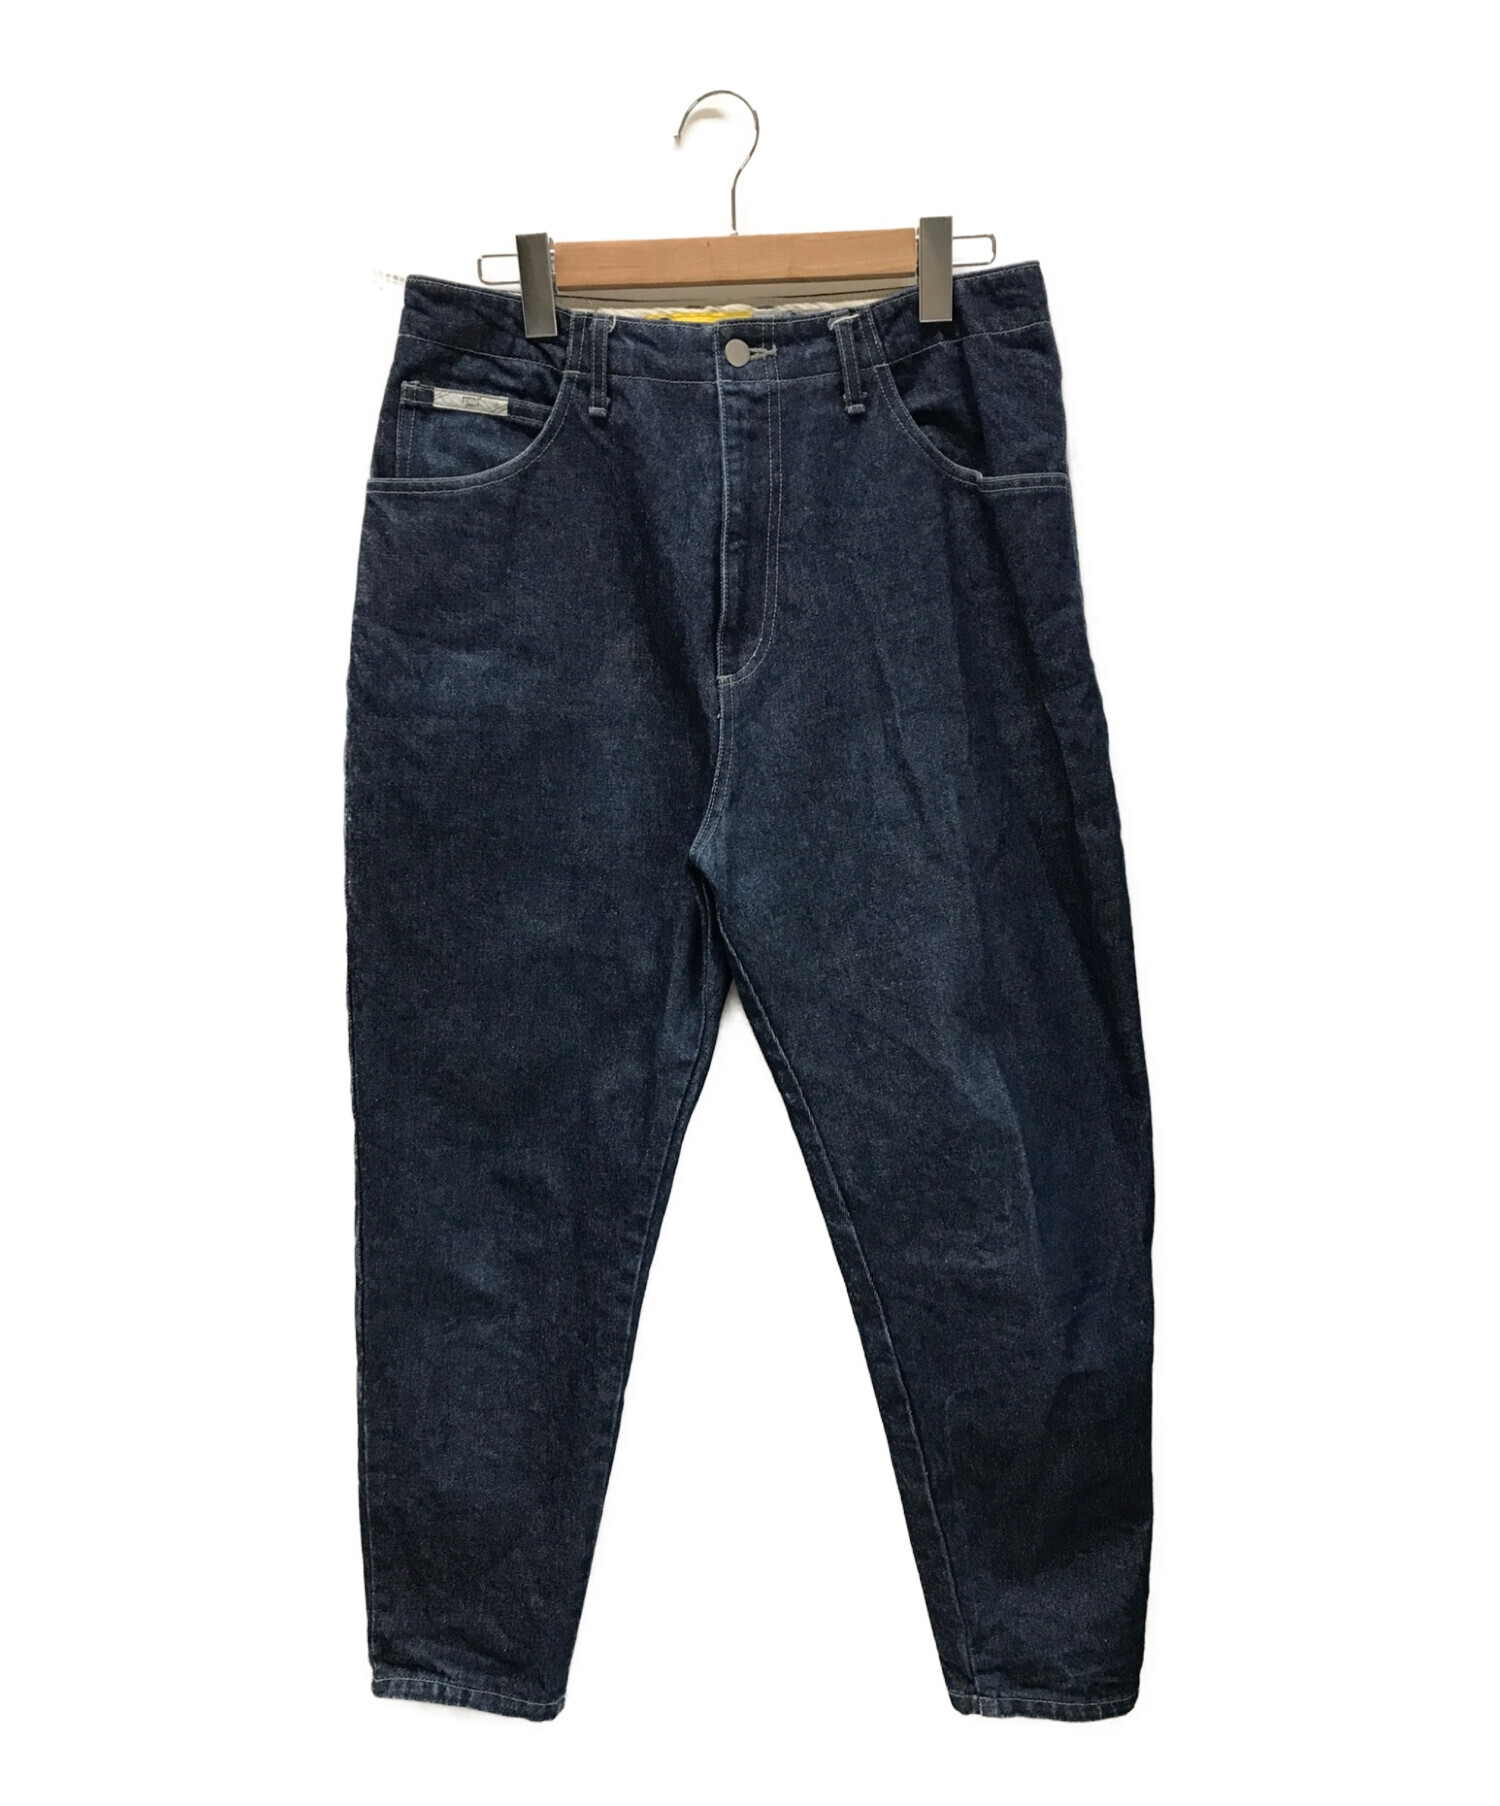 中古・古着通販】gourmet jeans (グルメジーンズ) type3 LEAN デニム